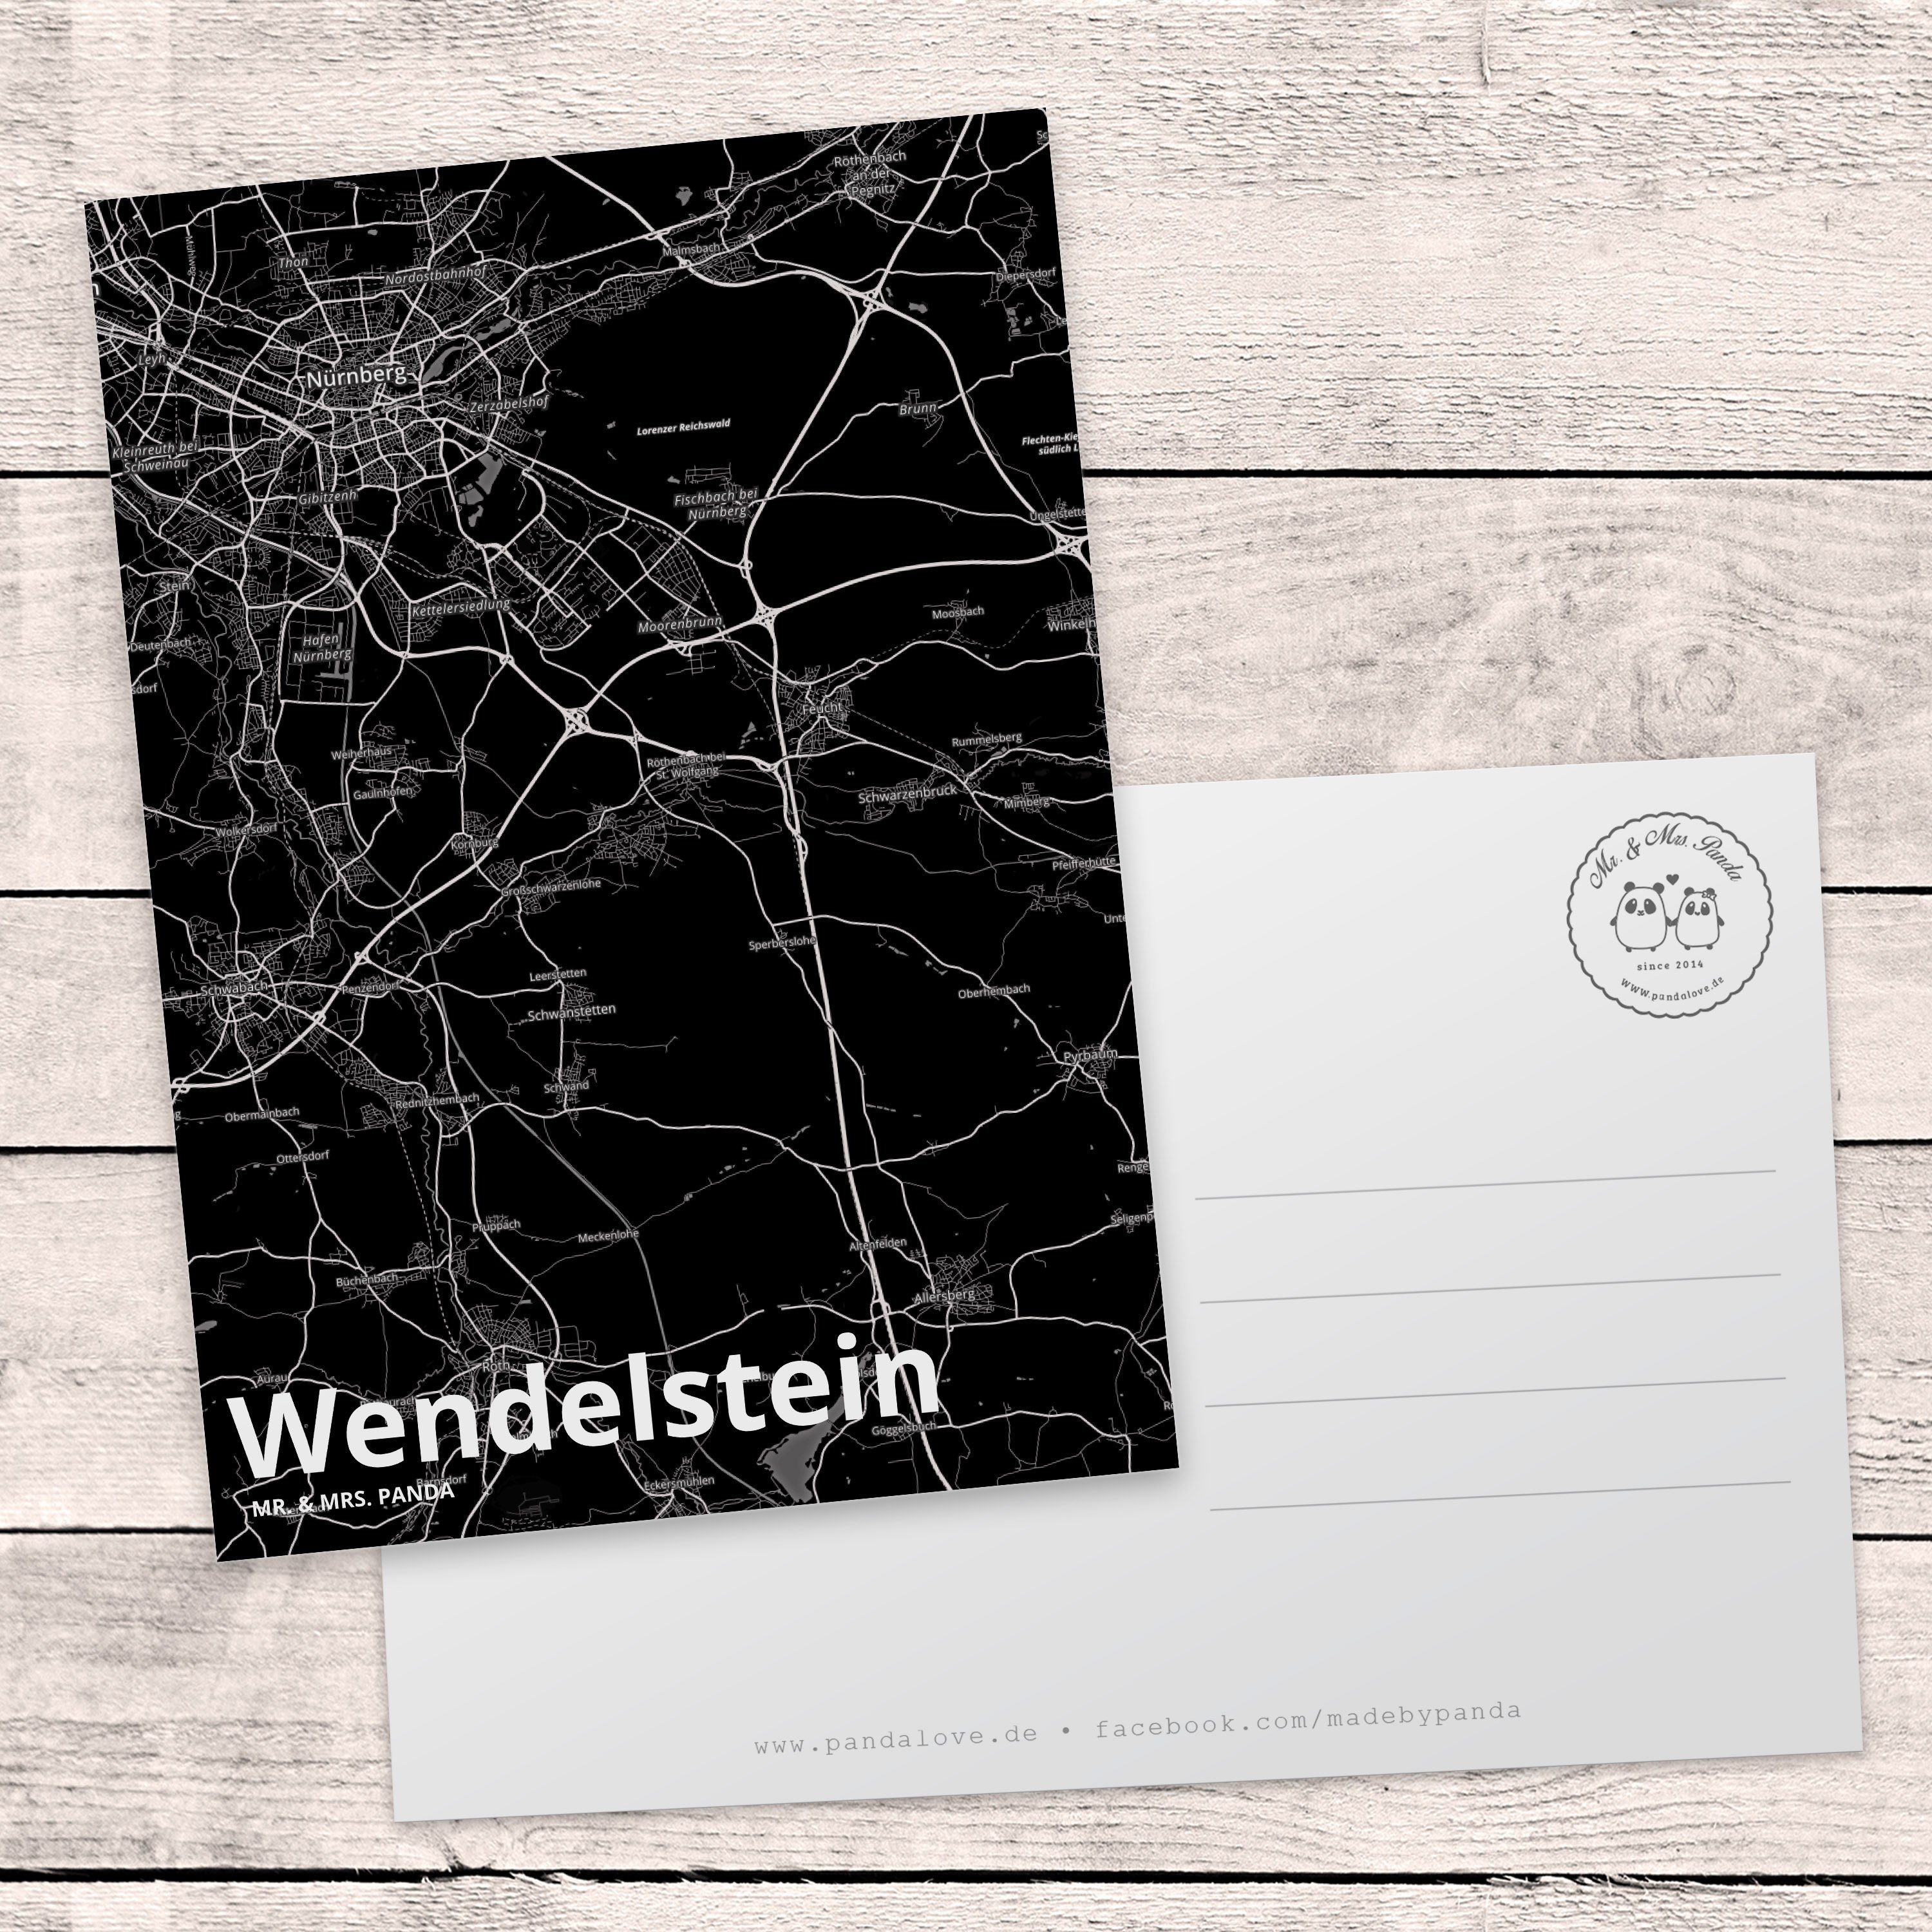 Mr. & Mrs. Panda - Stadt Dorf Geschenk, Landk Städte, Postkarte Karte Ansichtskarte, Wendelstein